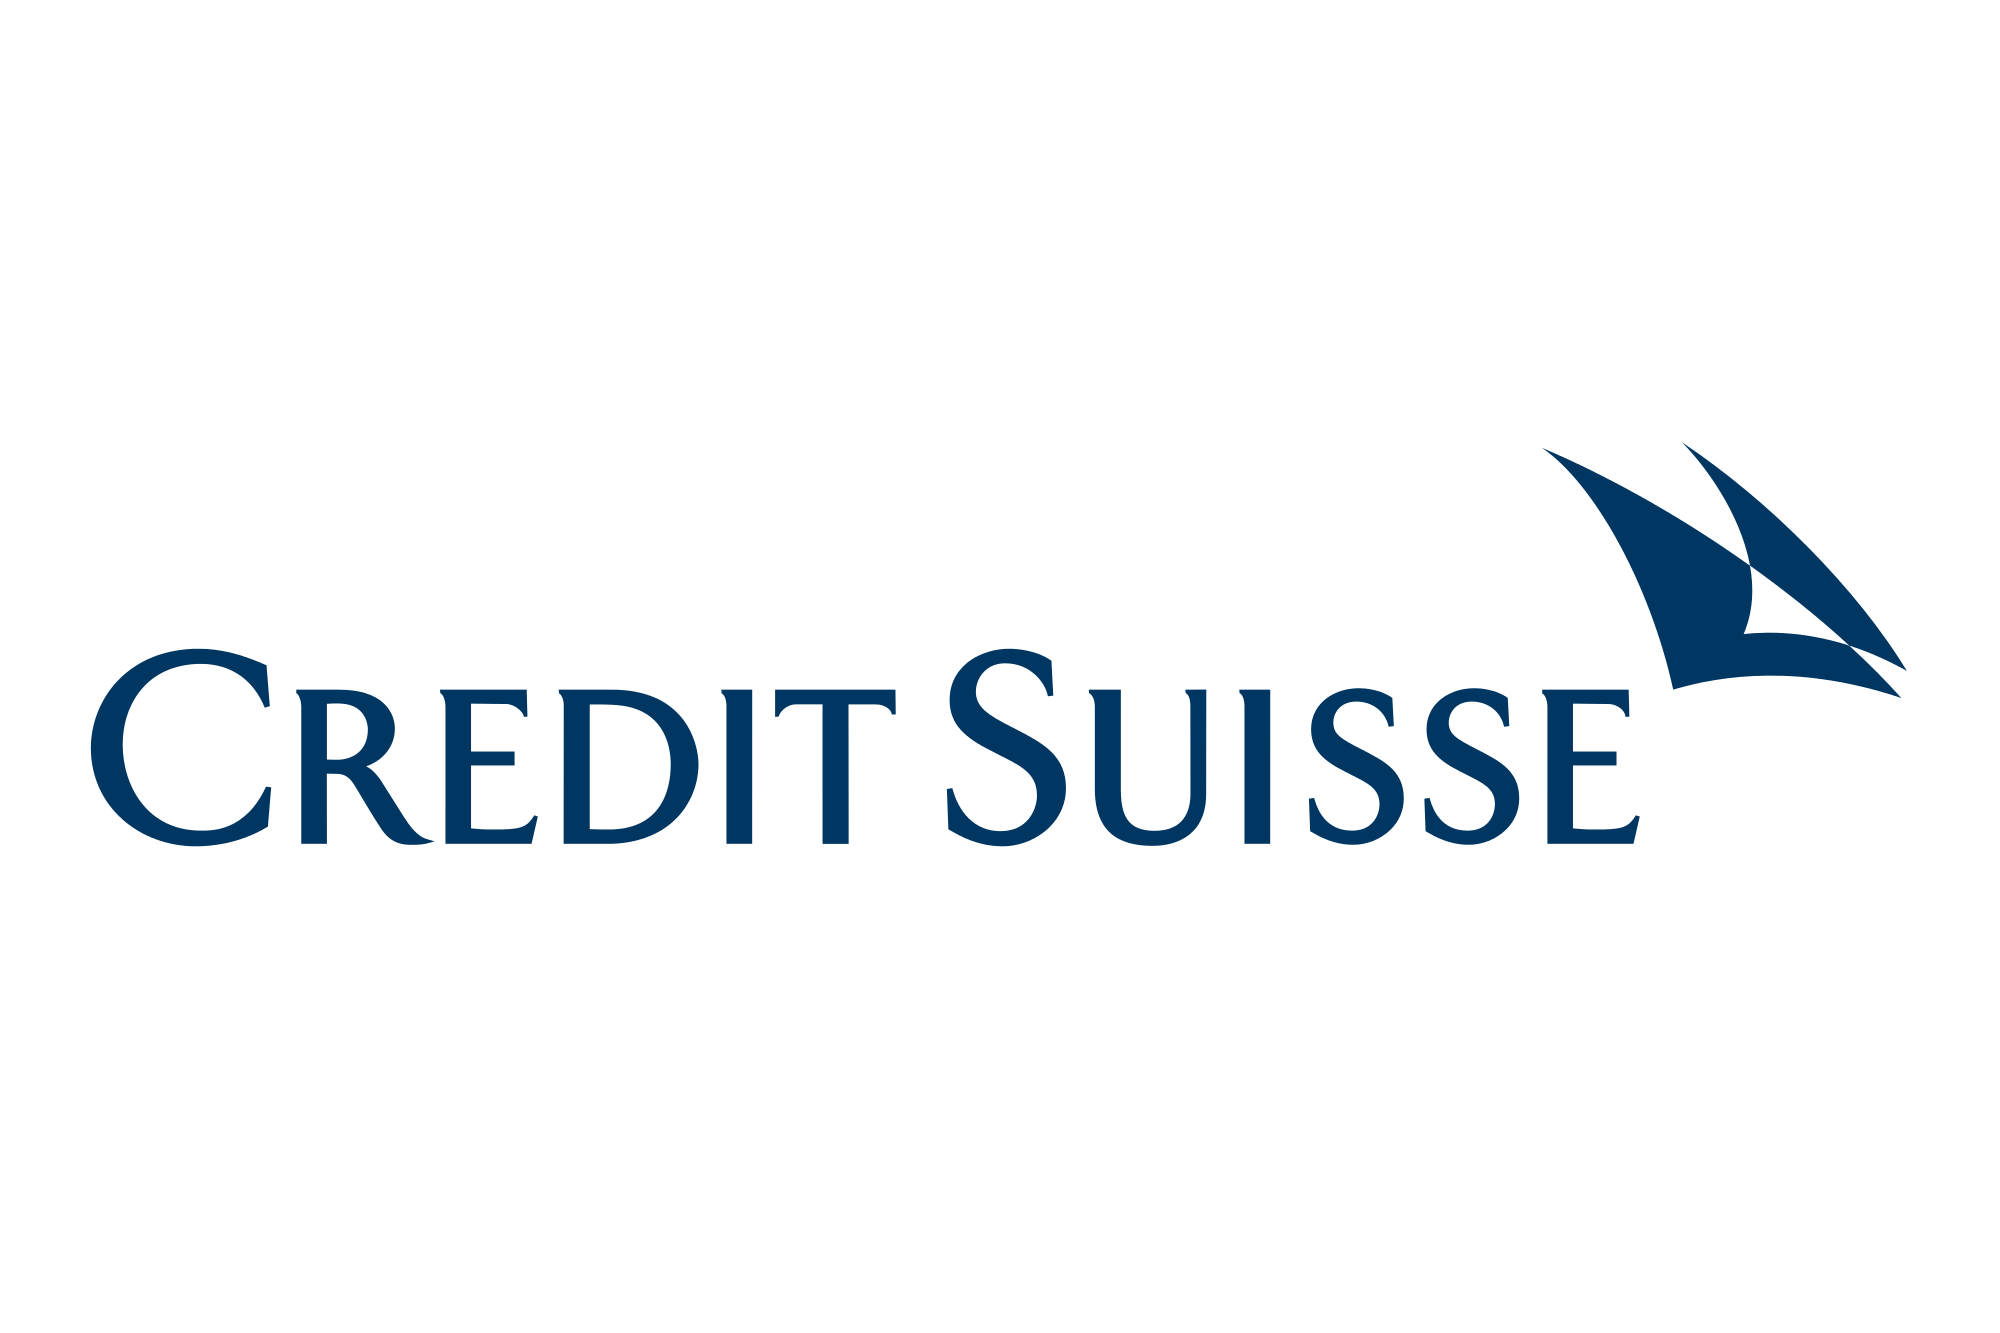 Credit_Suisse_Logo.svg.png